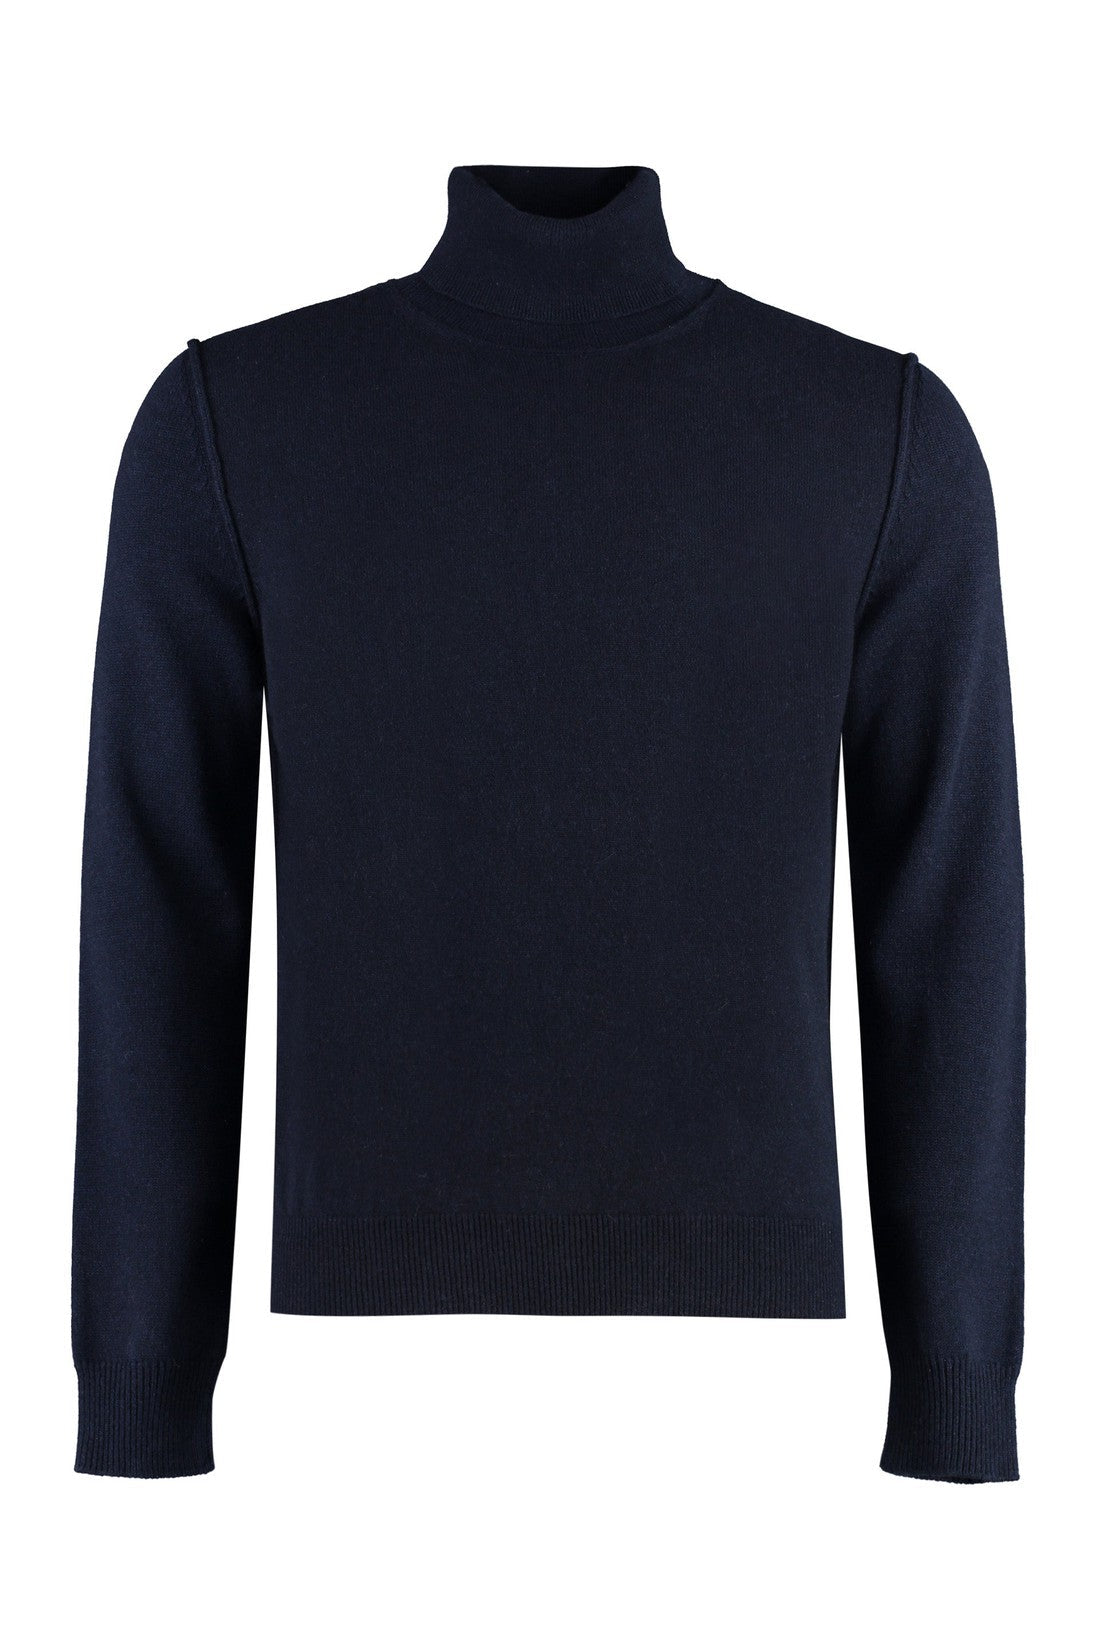 Maison Margiela-OUTLET-SALE-Cashmere turtleneck sweater-ARCHIVIST